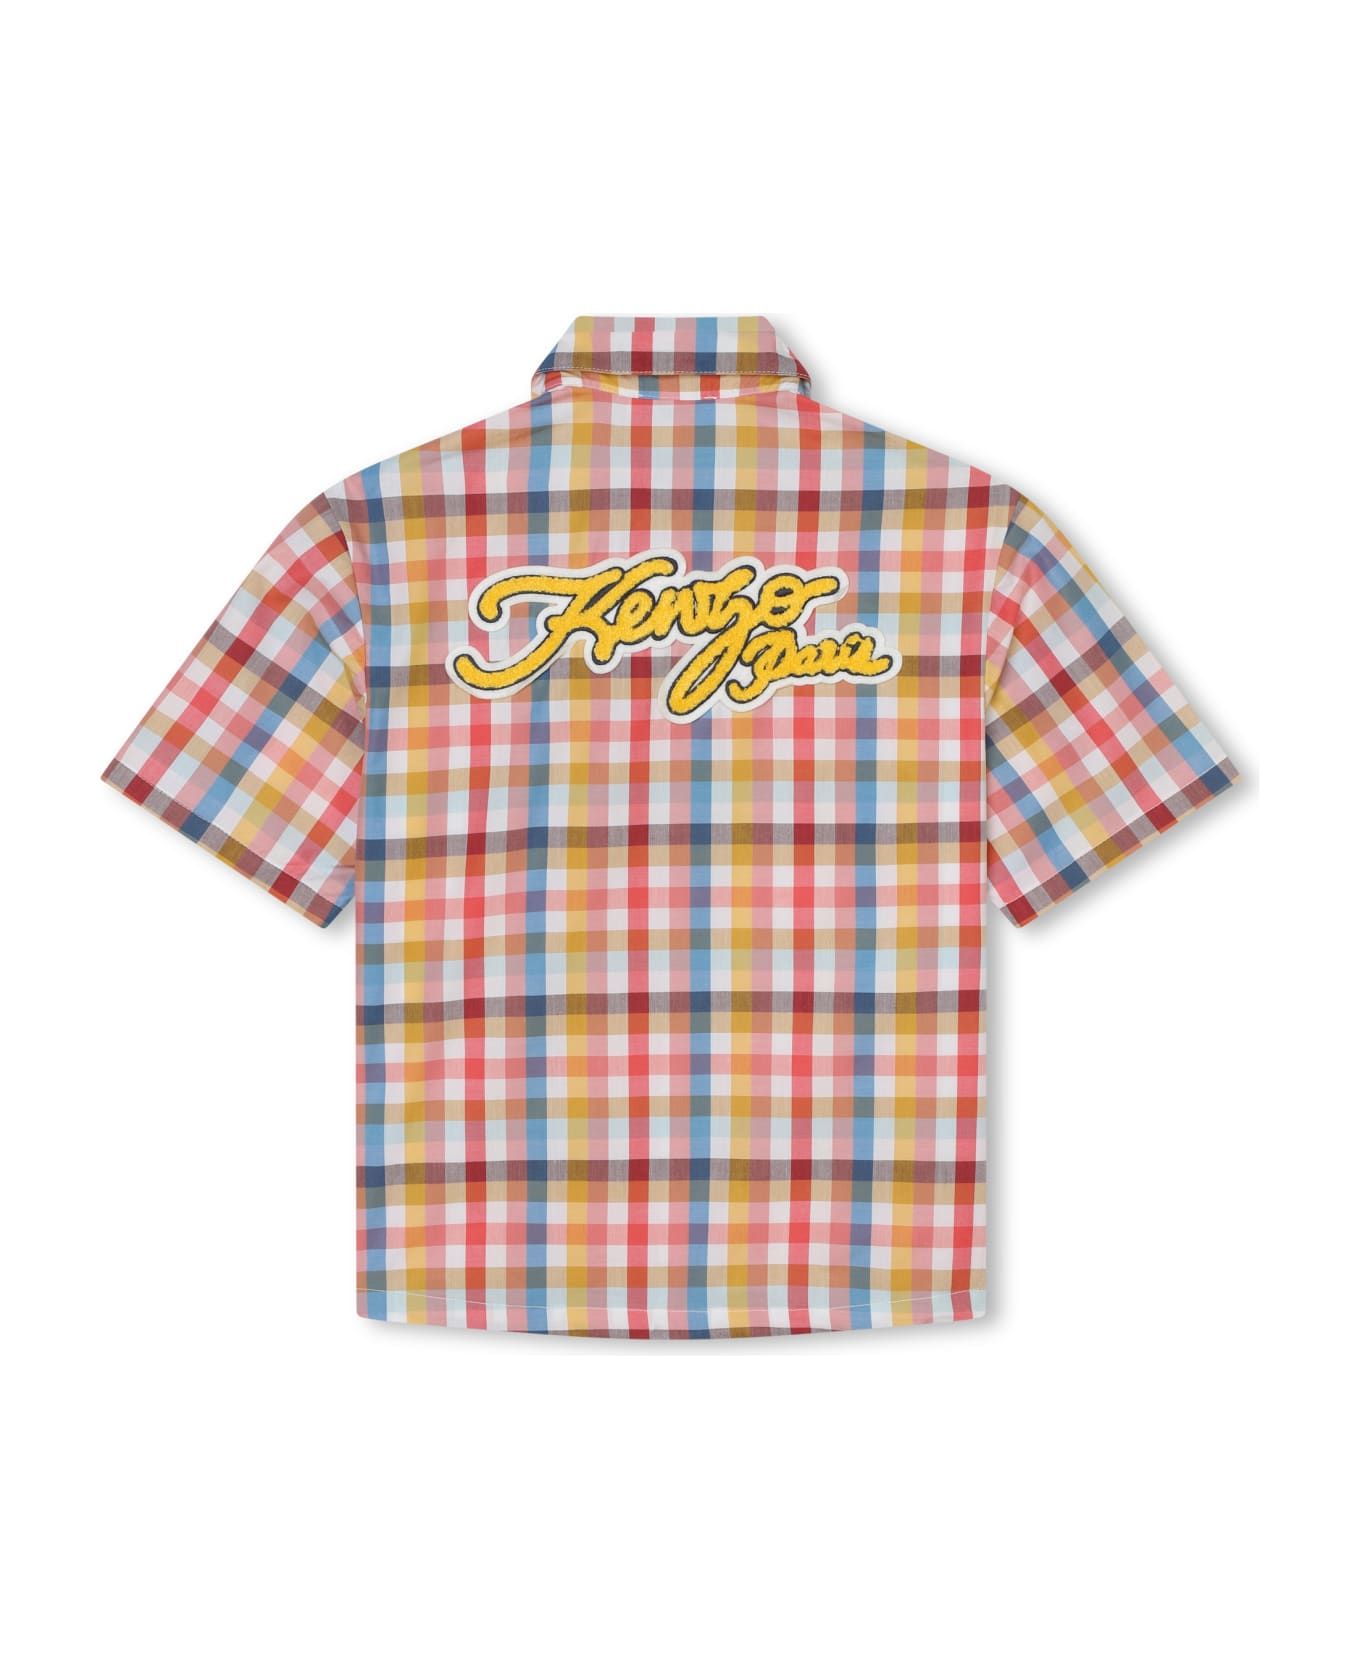 Kenzo Kids Camicia Con Ricamo - Multicolor